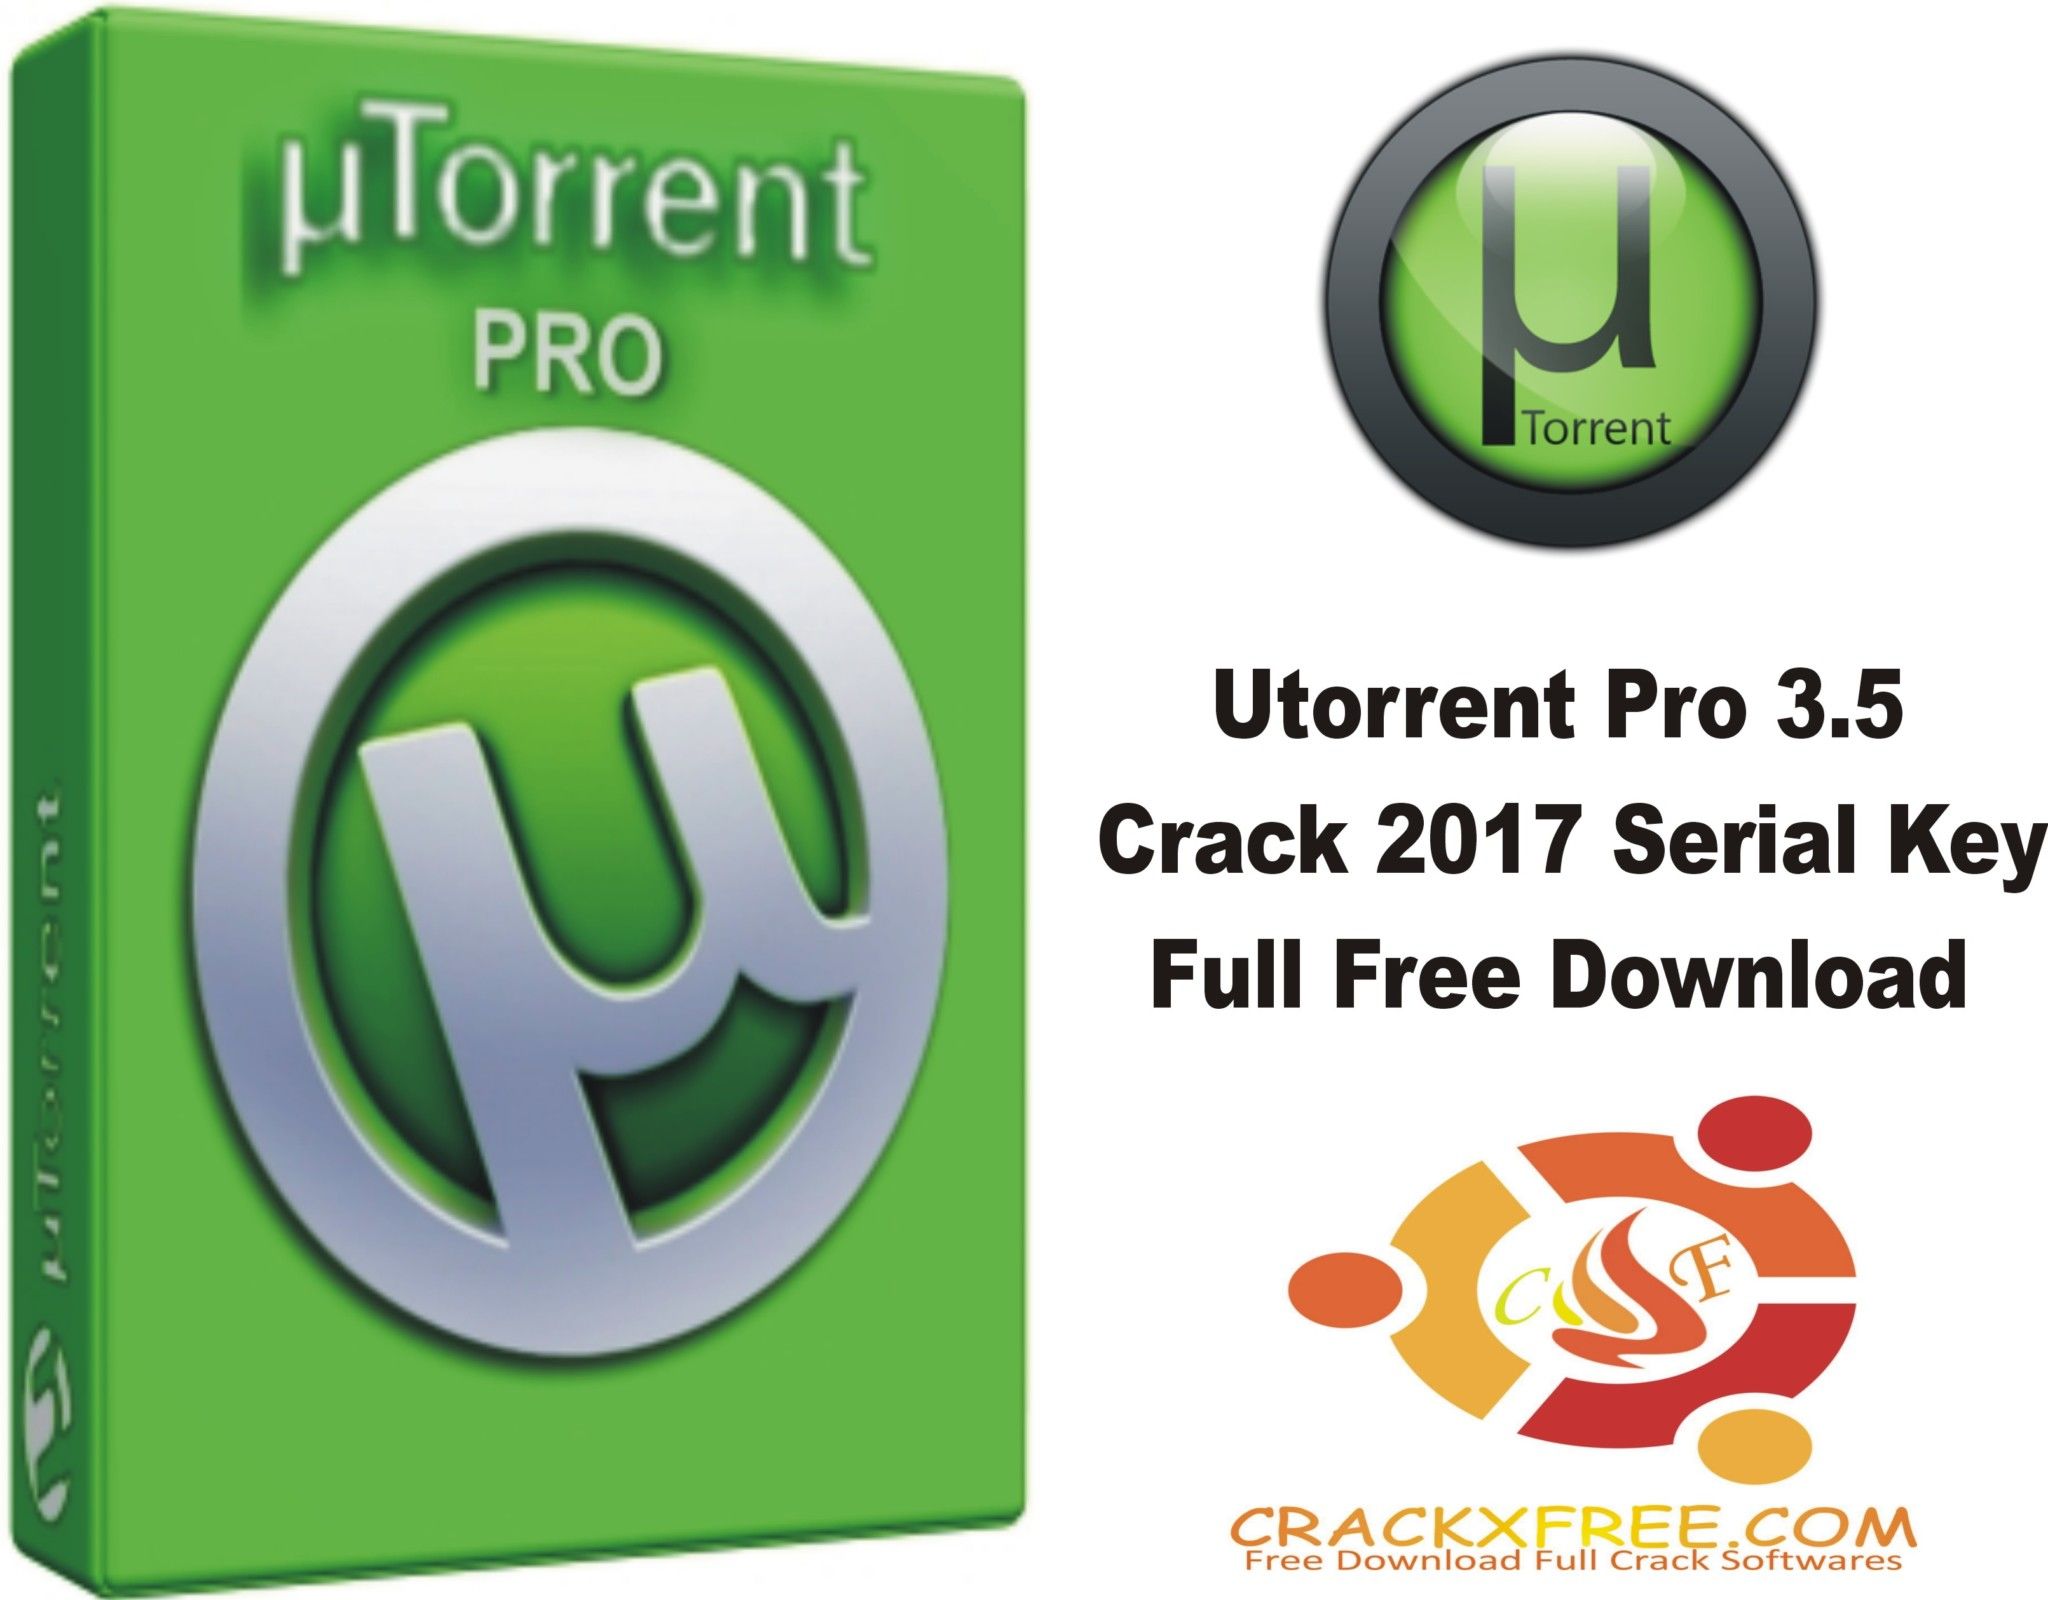 why get utorrent pro